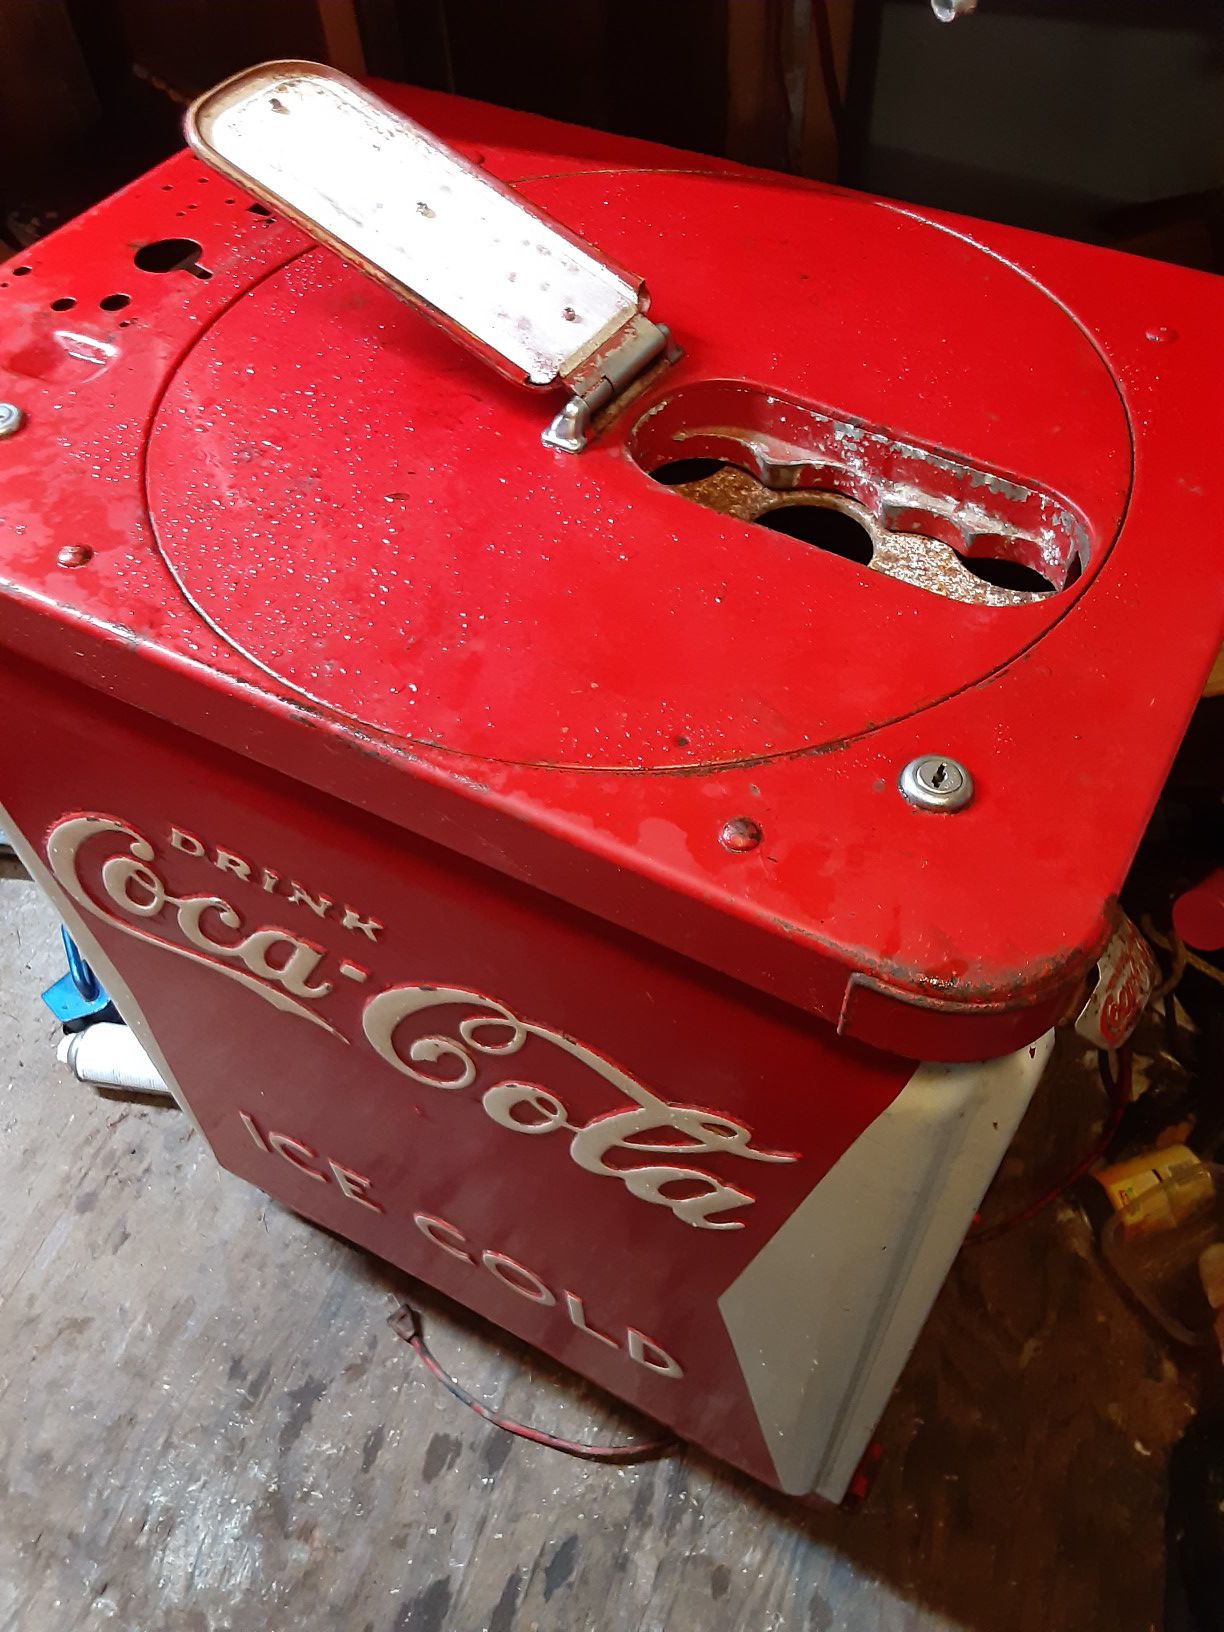 Late 1940s coca cola vending machine vendo 123.